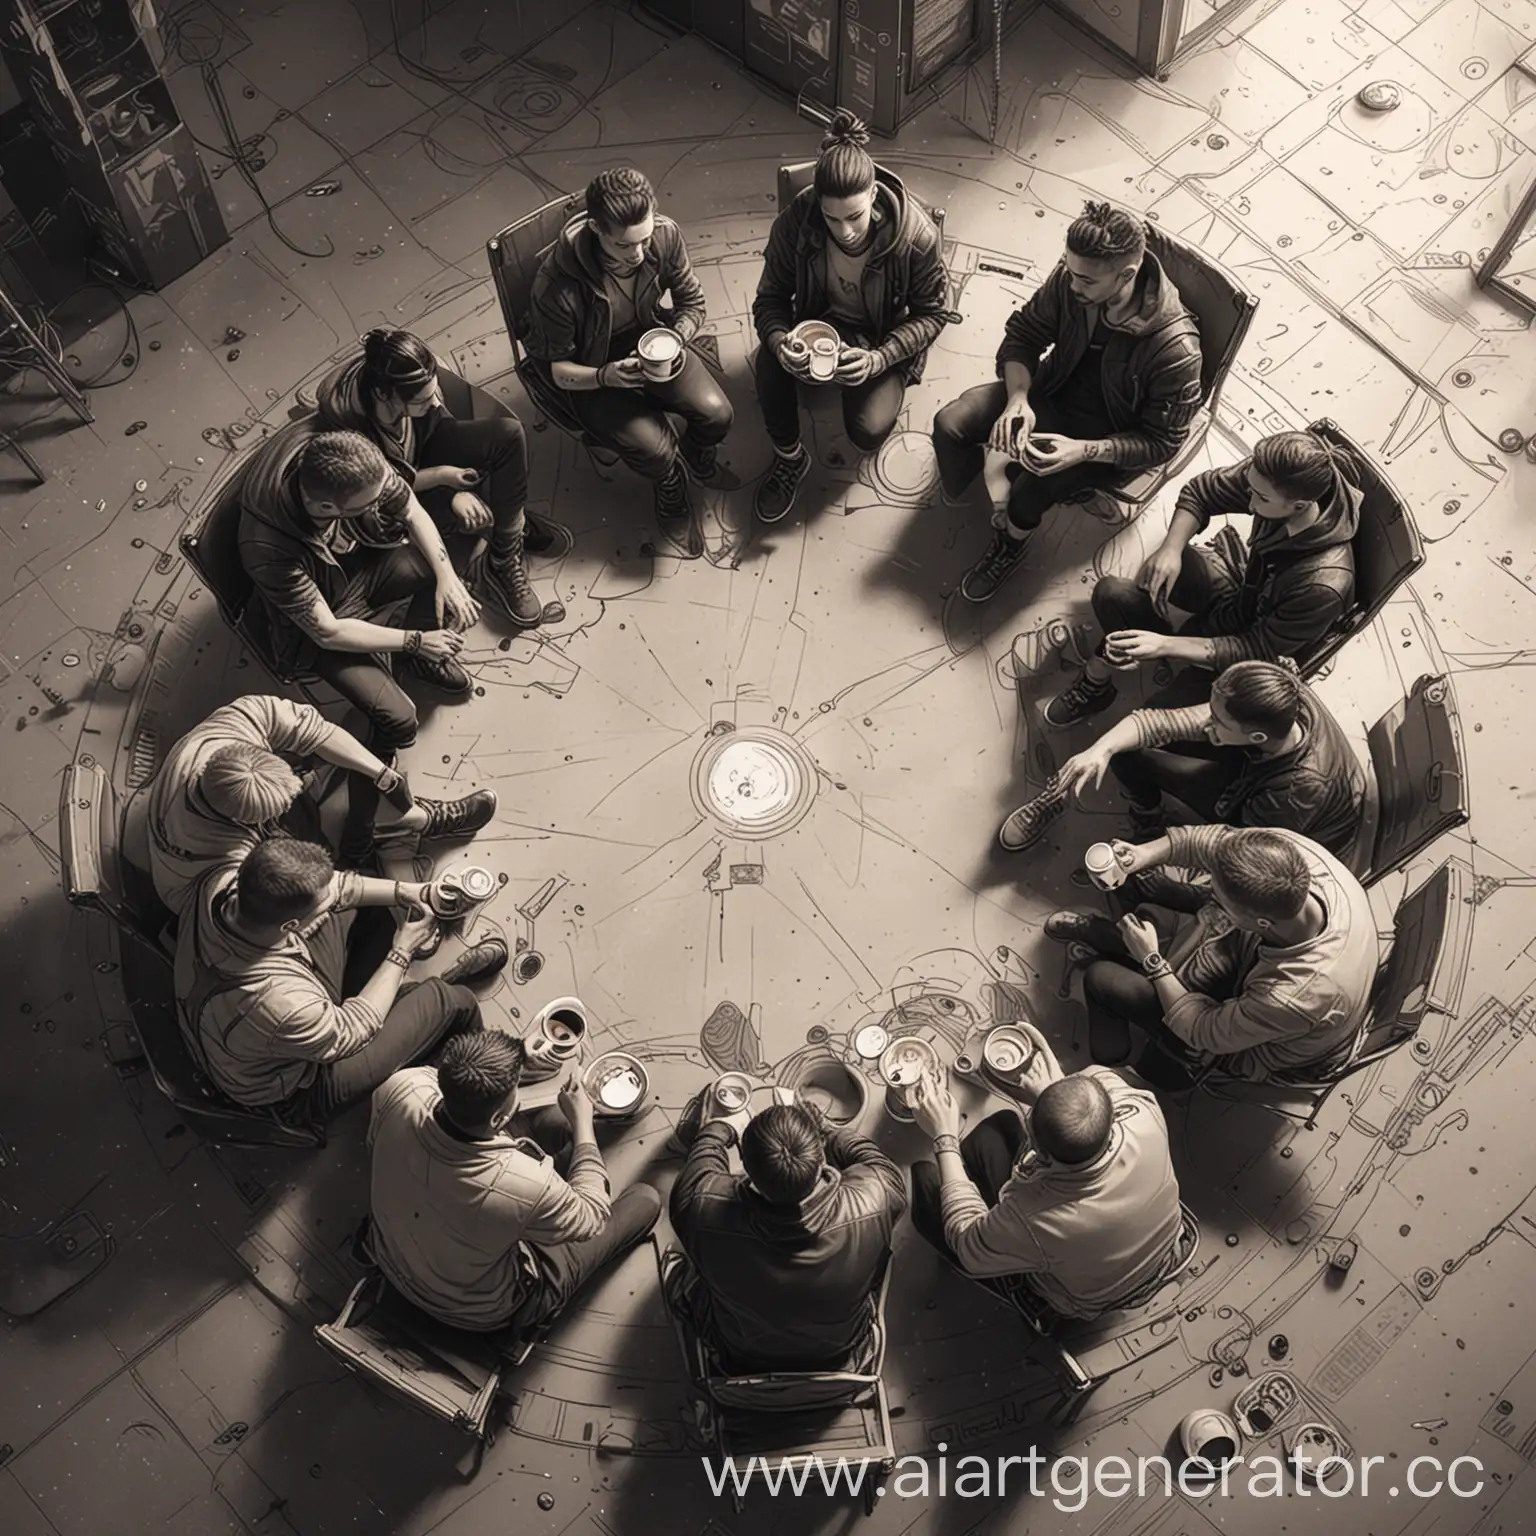 10 человек сидят в кофейне на полу в кругу и передают чашку кофе по кругу. рисунок в стиле киберпанка